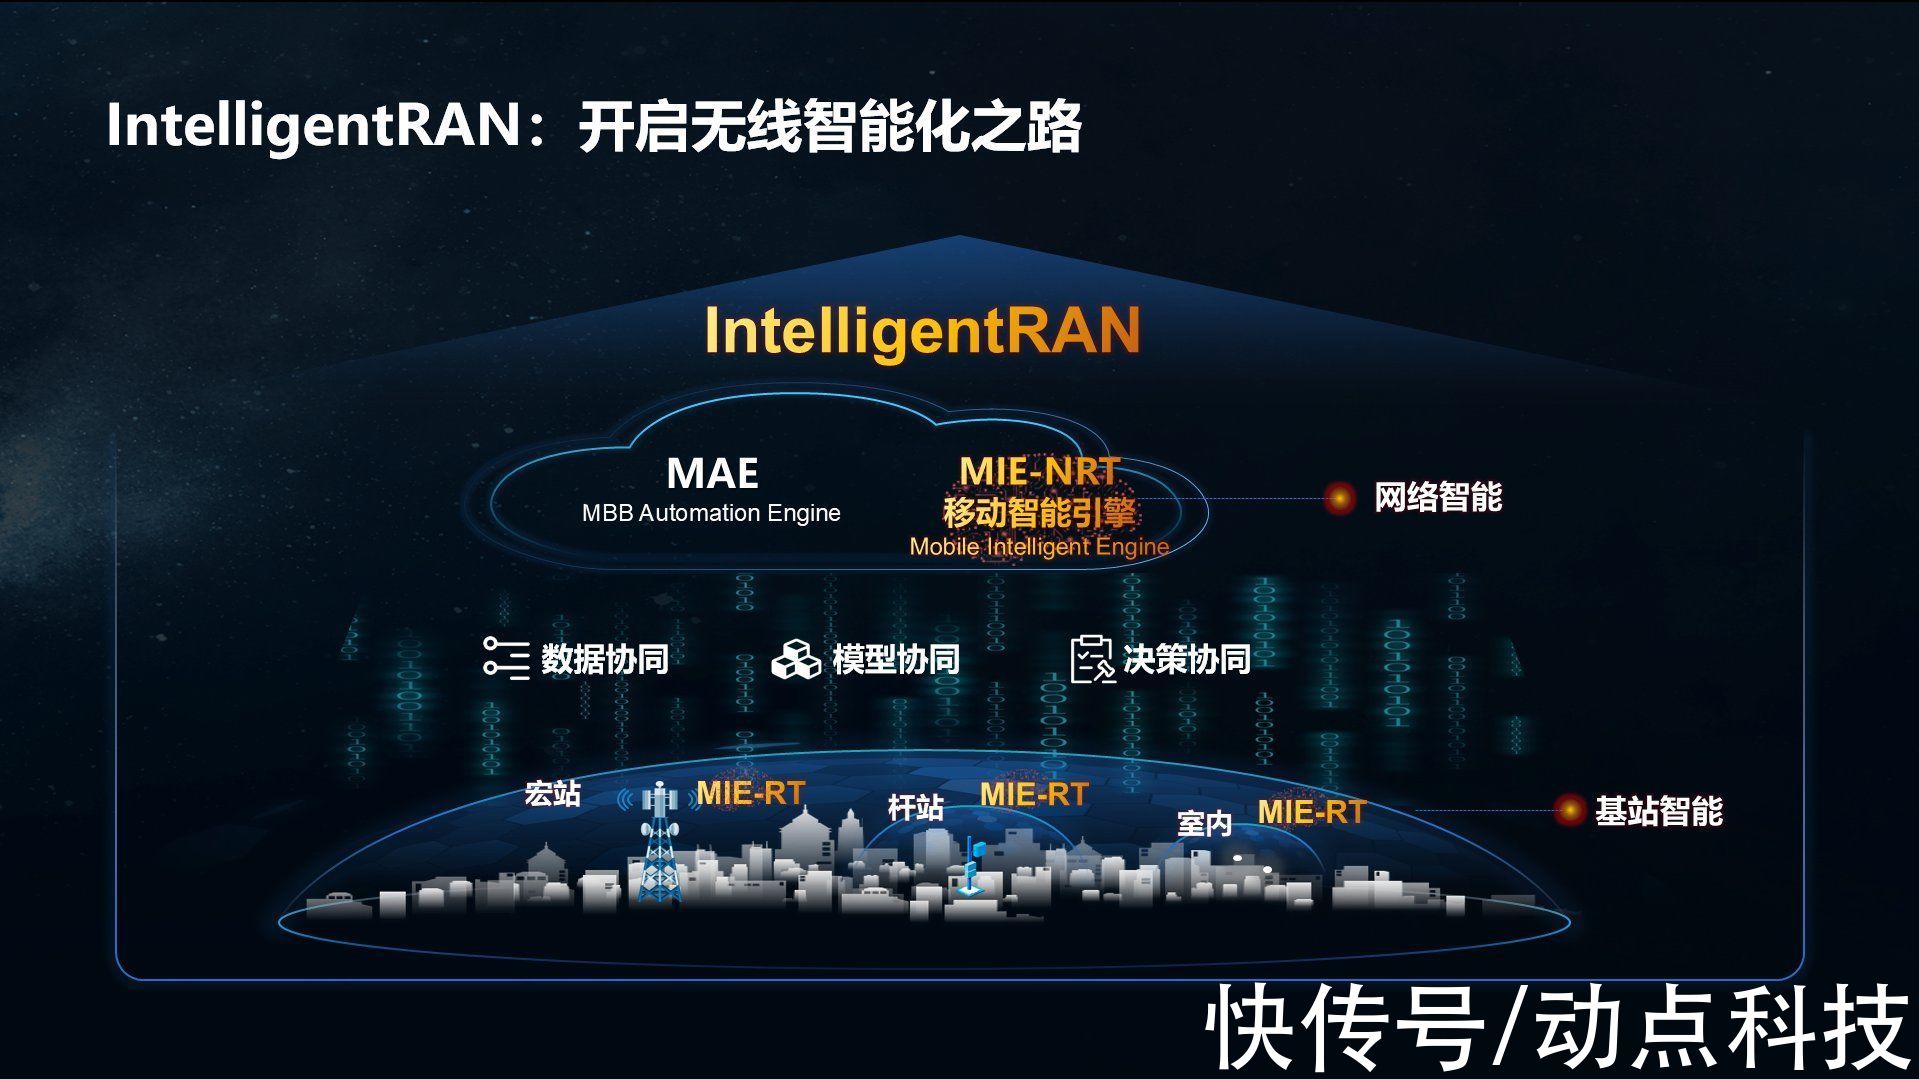 甘斌|华为发布无线智能化架构 IntelligentRAN